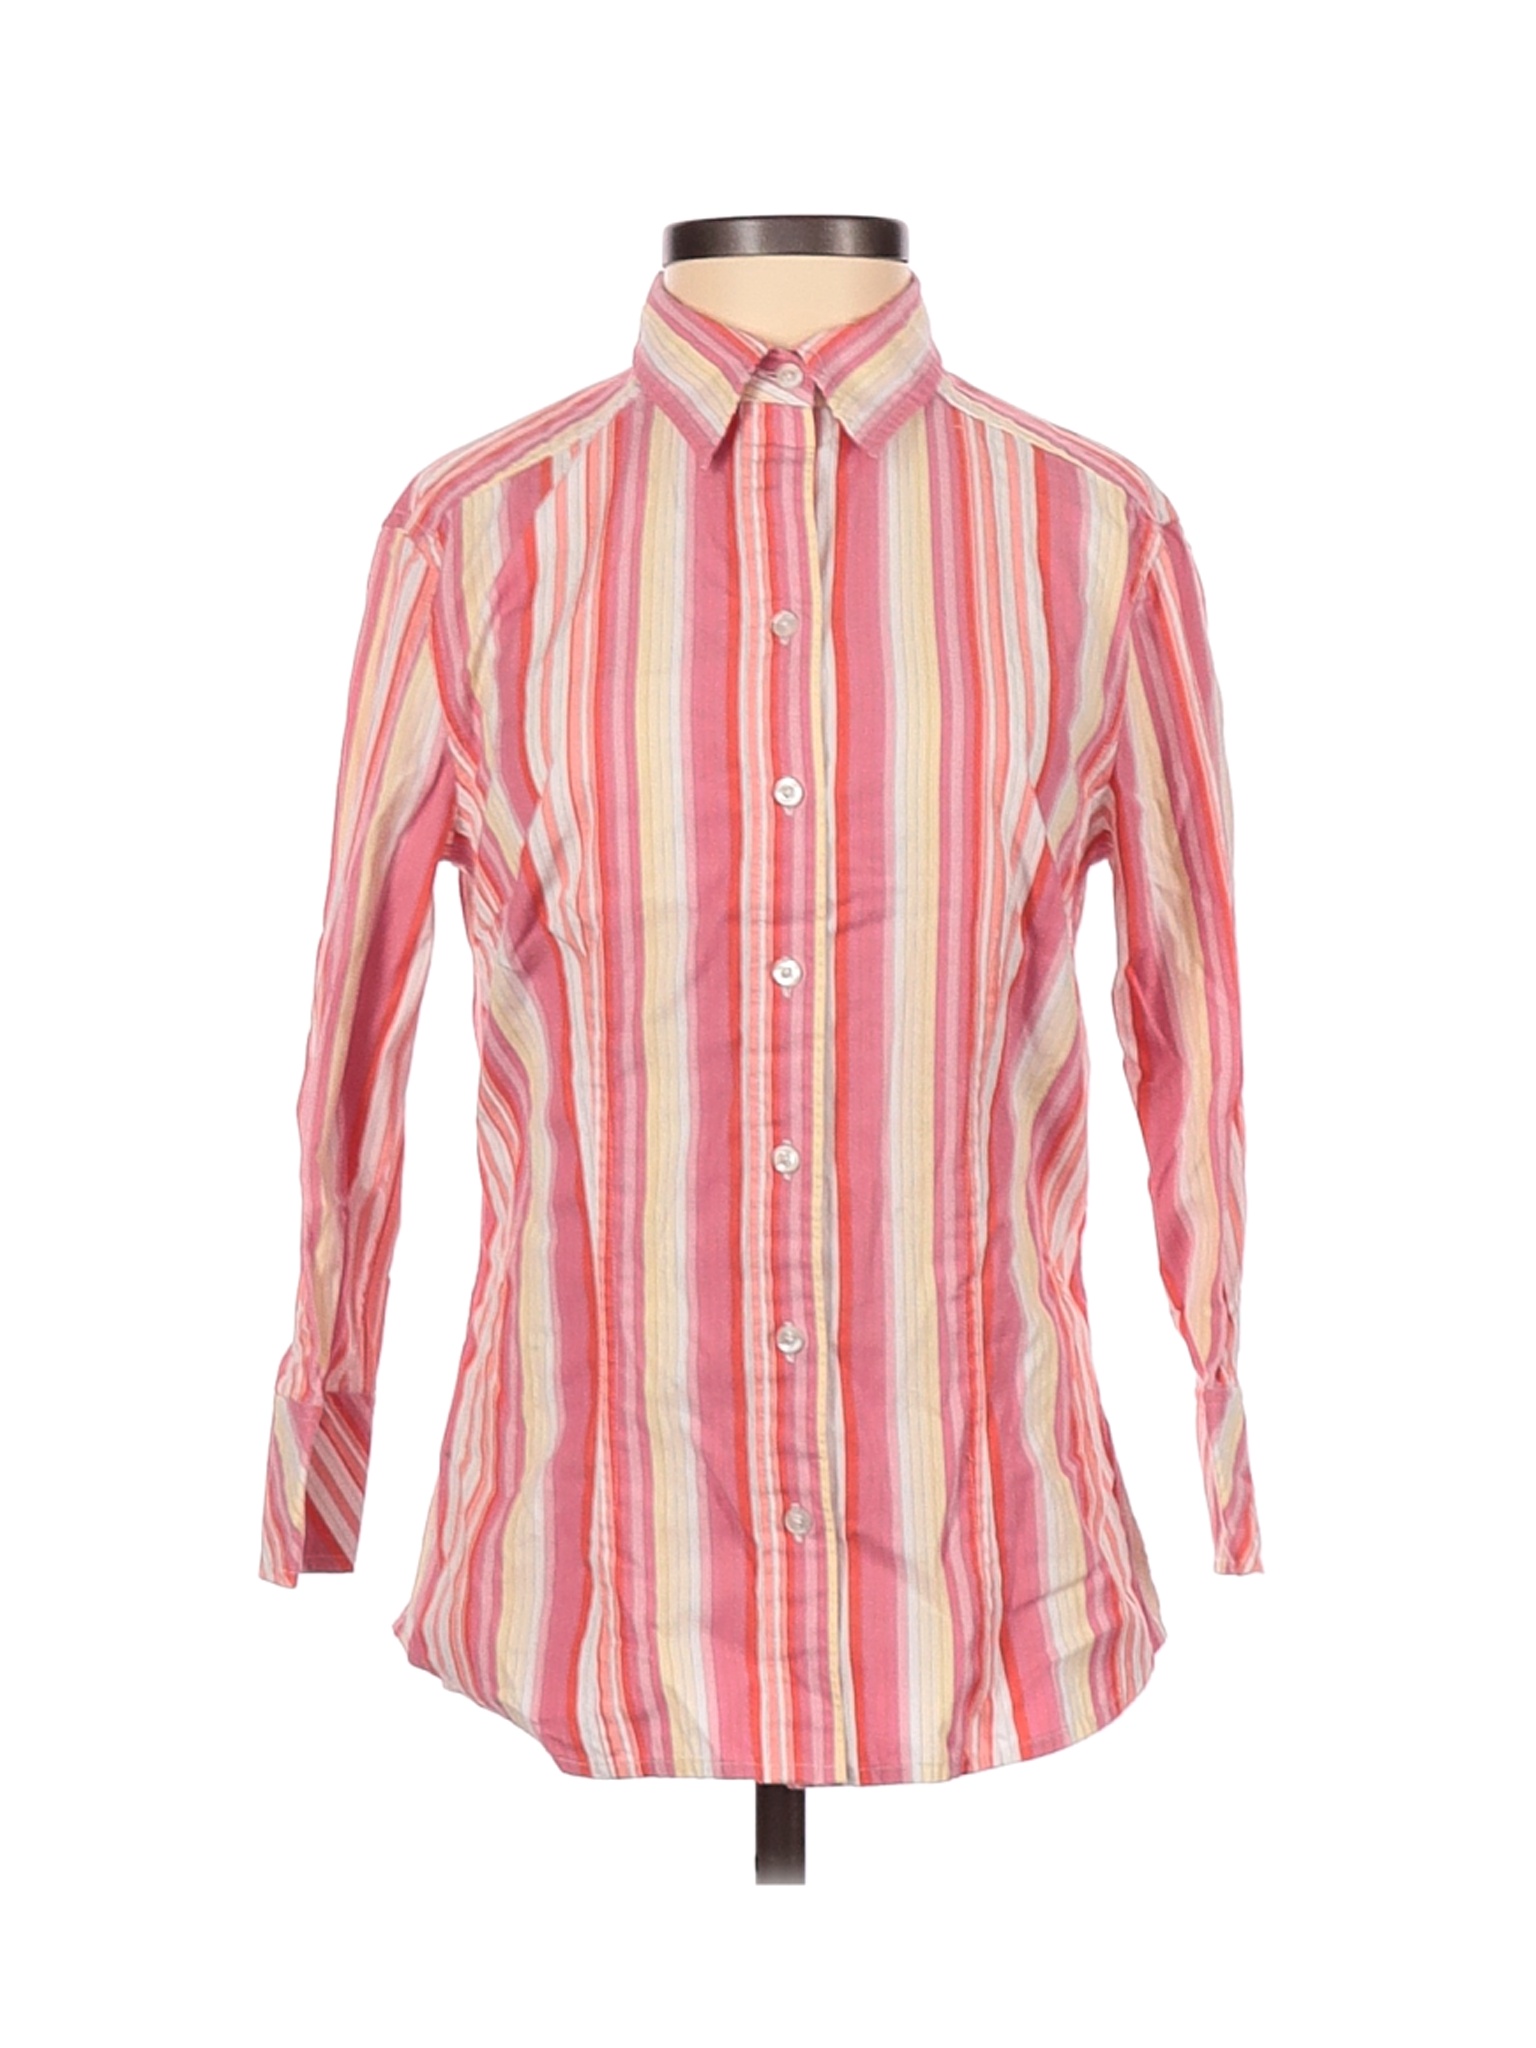 Express Women Pink 3/4 Sleeve Button-Down Shirt 2 | eBay